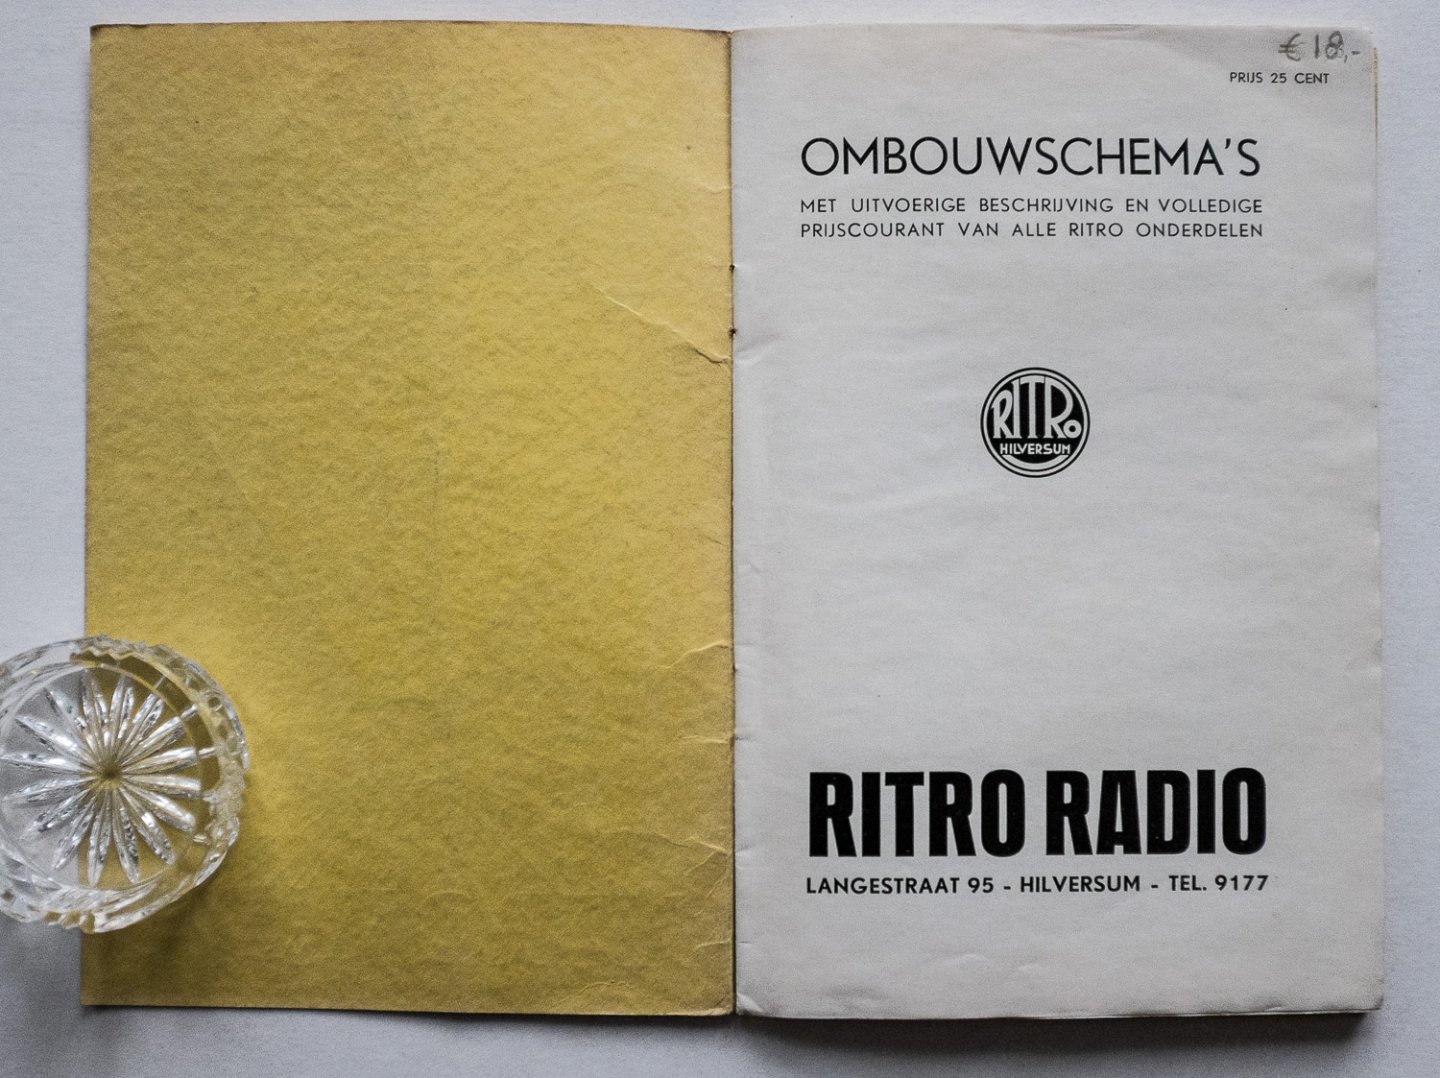  - Ritro Radio - Ombouwschema's met uitvoerige beschrijving en volledige prijscourant van alle Ritro onderdelen